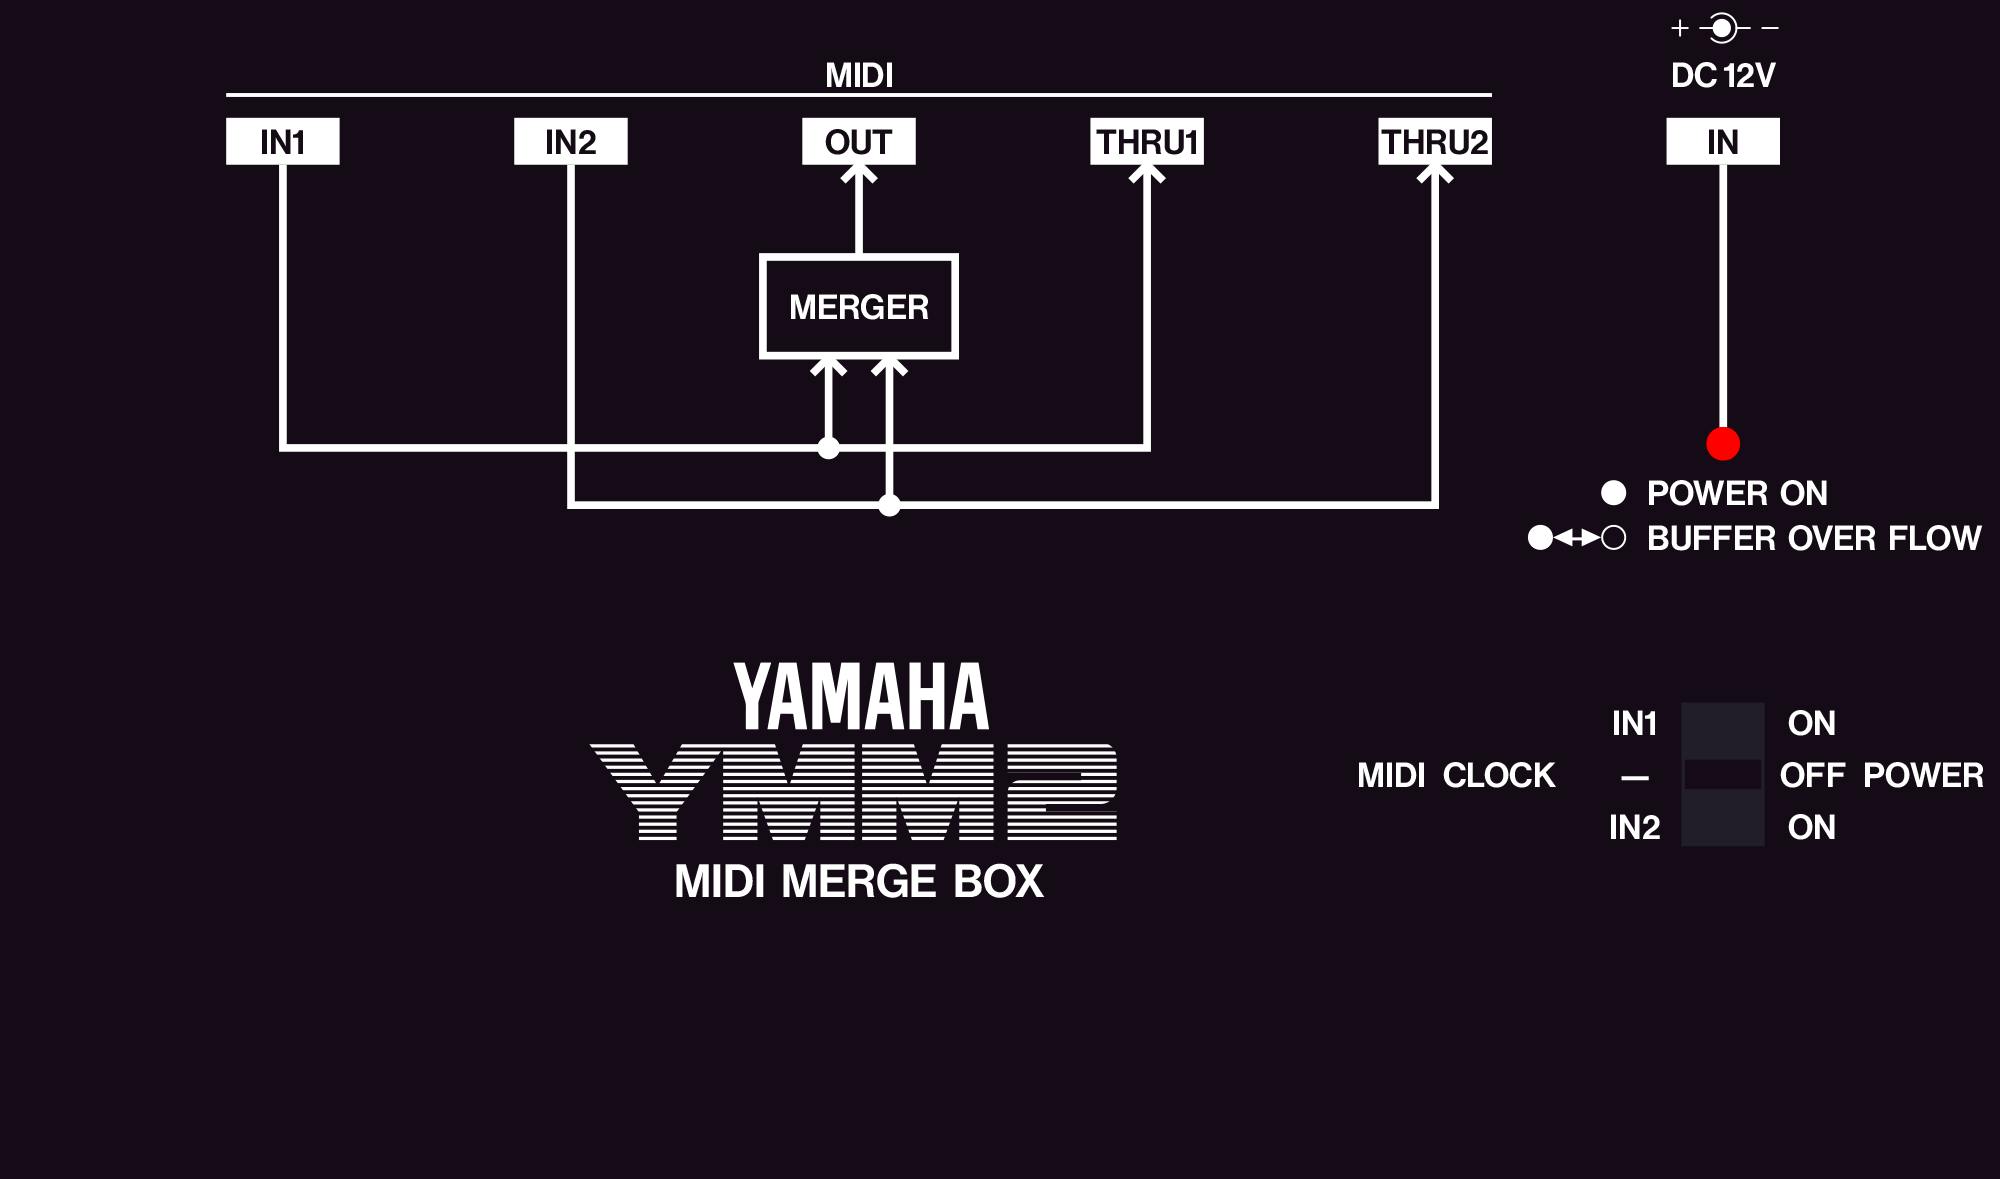 Yamaha YMM2 MIDI merge box